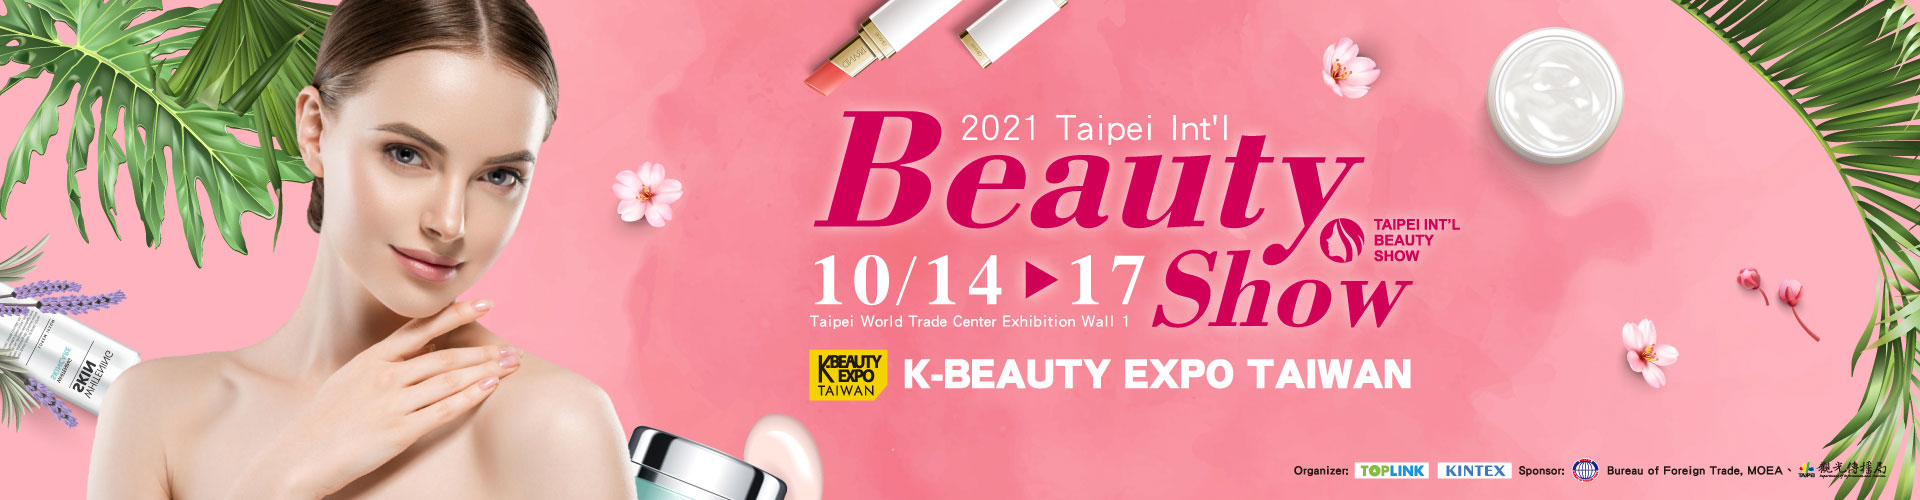 2021 Taipei In't Beauty Show & K-Beauty Expo